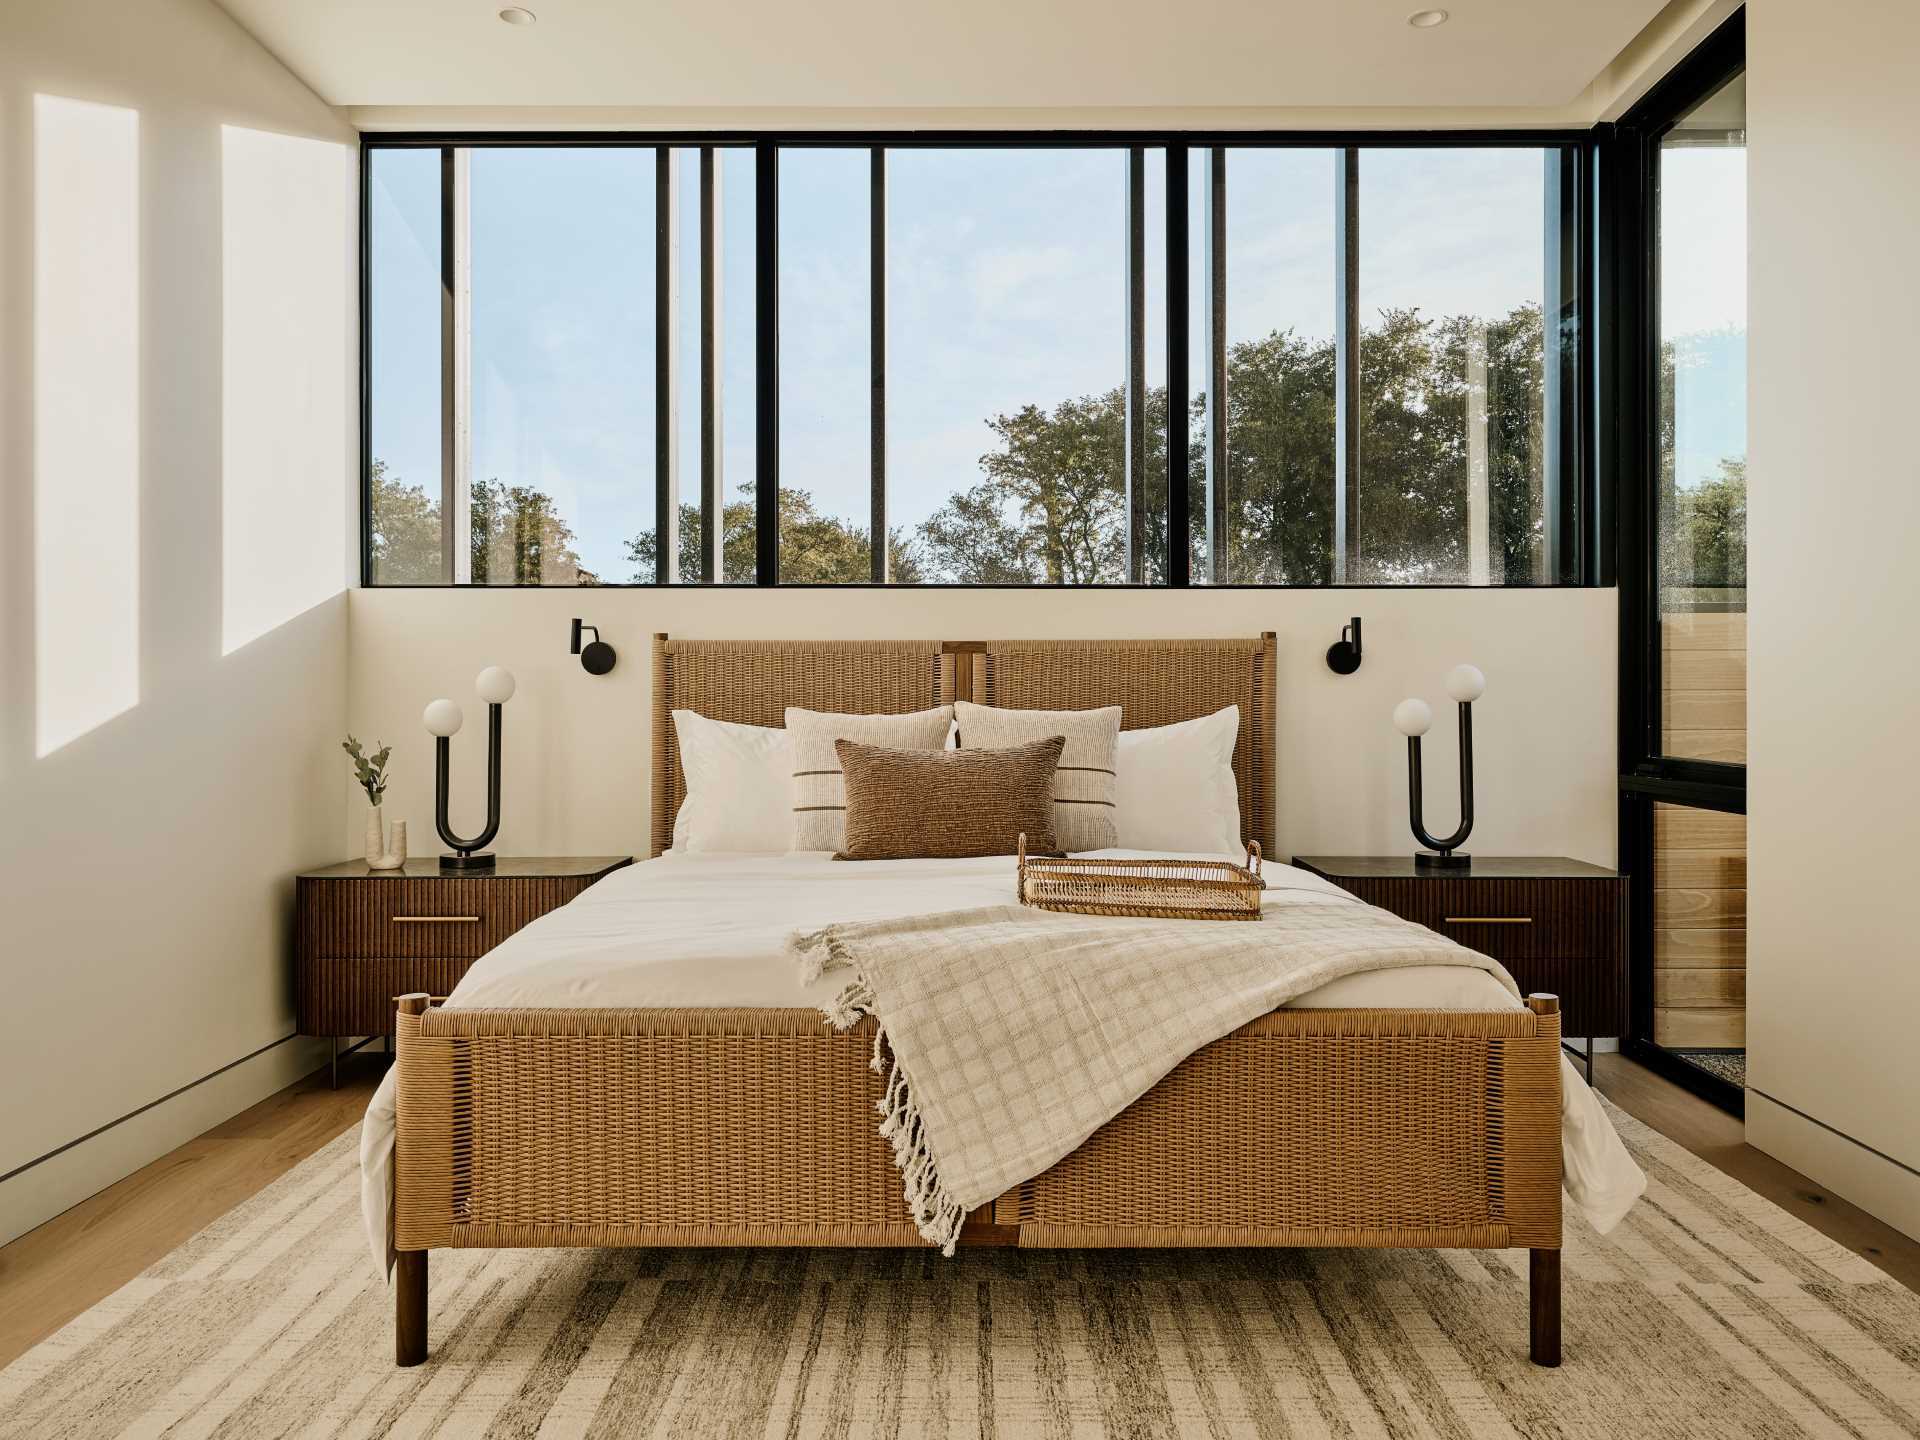 În dormitor, elementele texturate adaugă interes mobilierului contemporan.